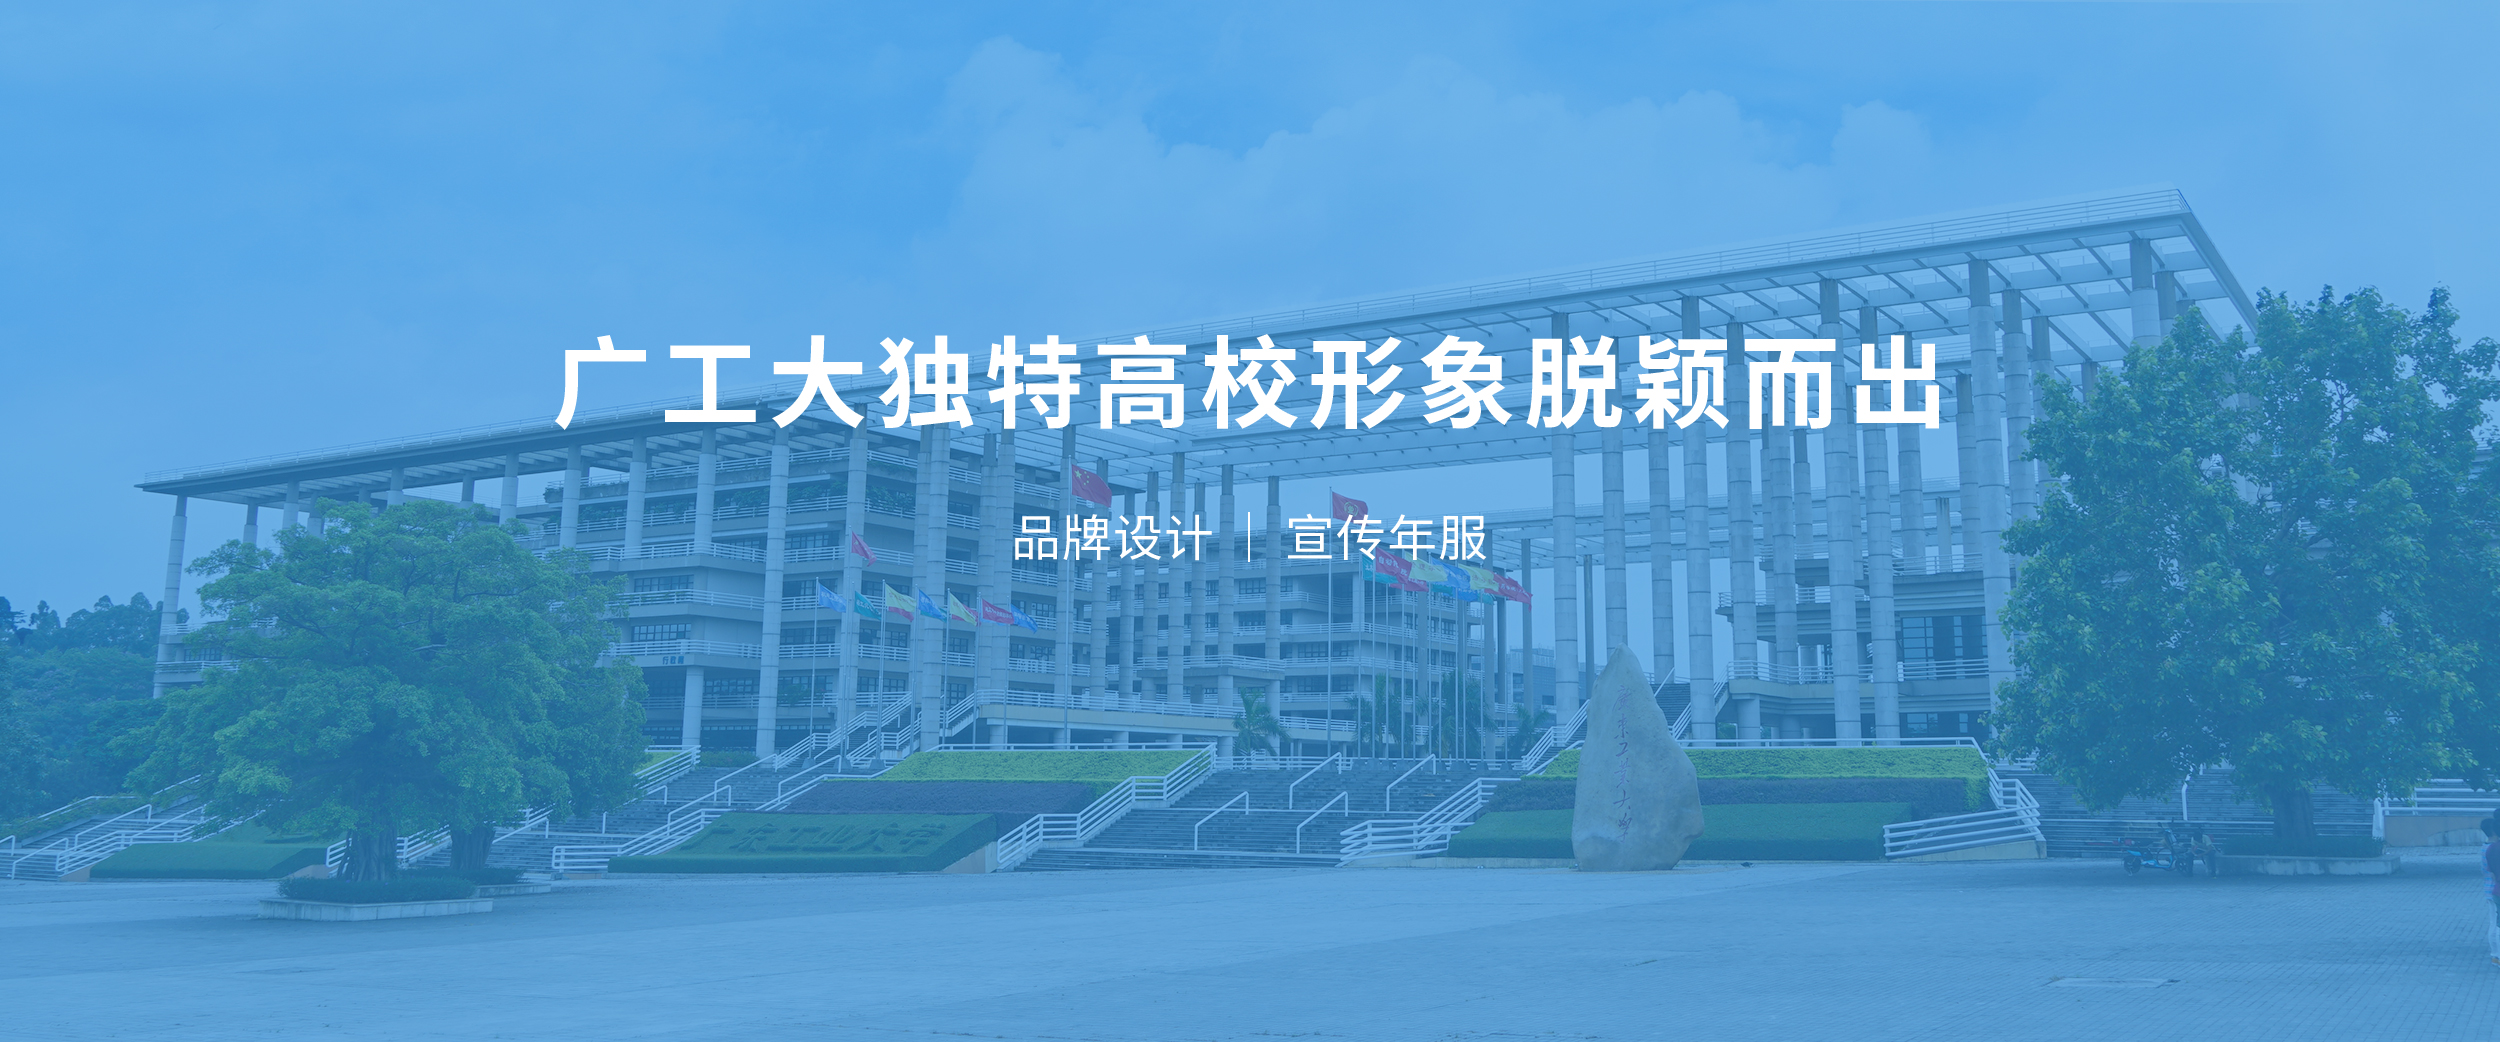 广东工业大学-高校教育1